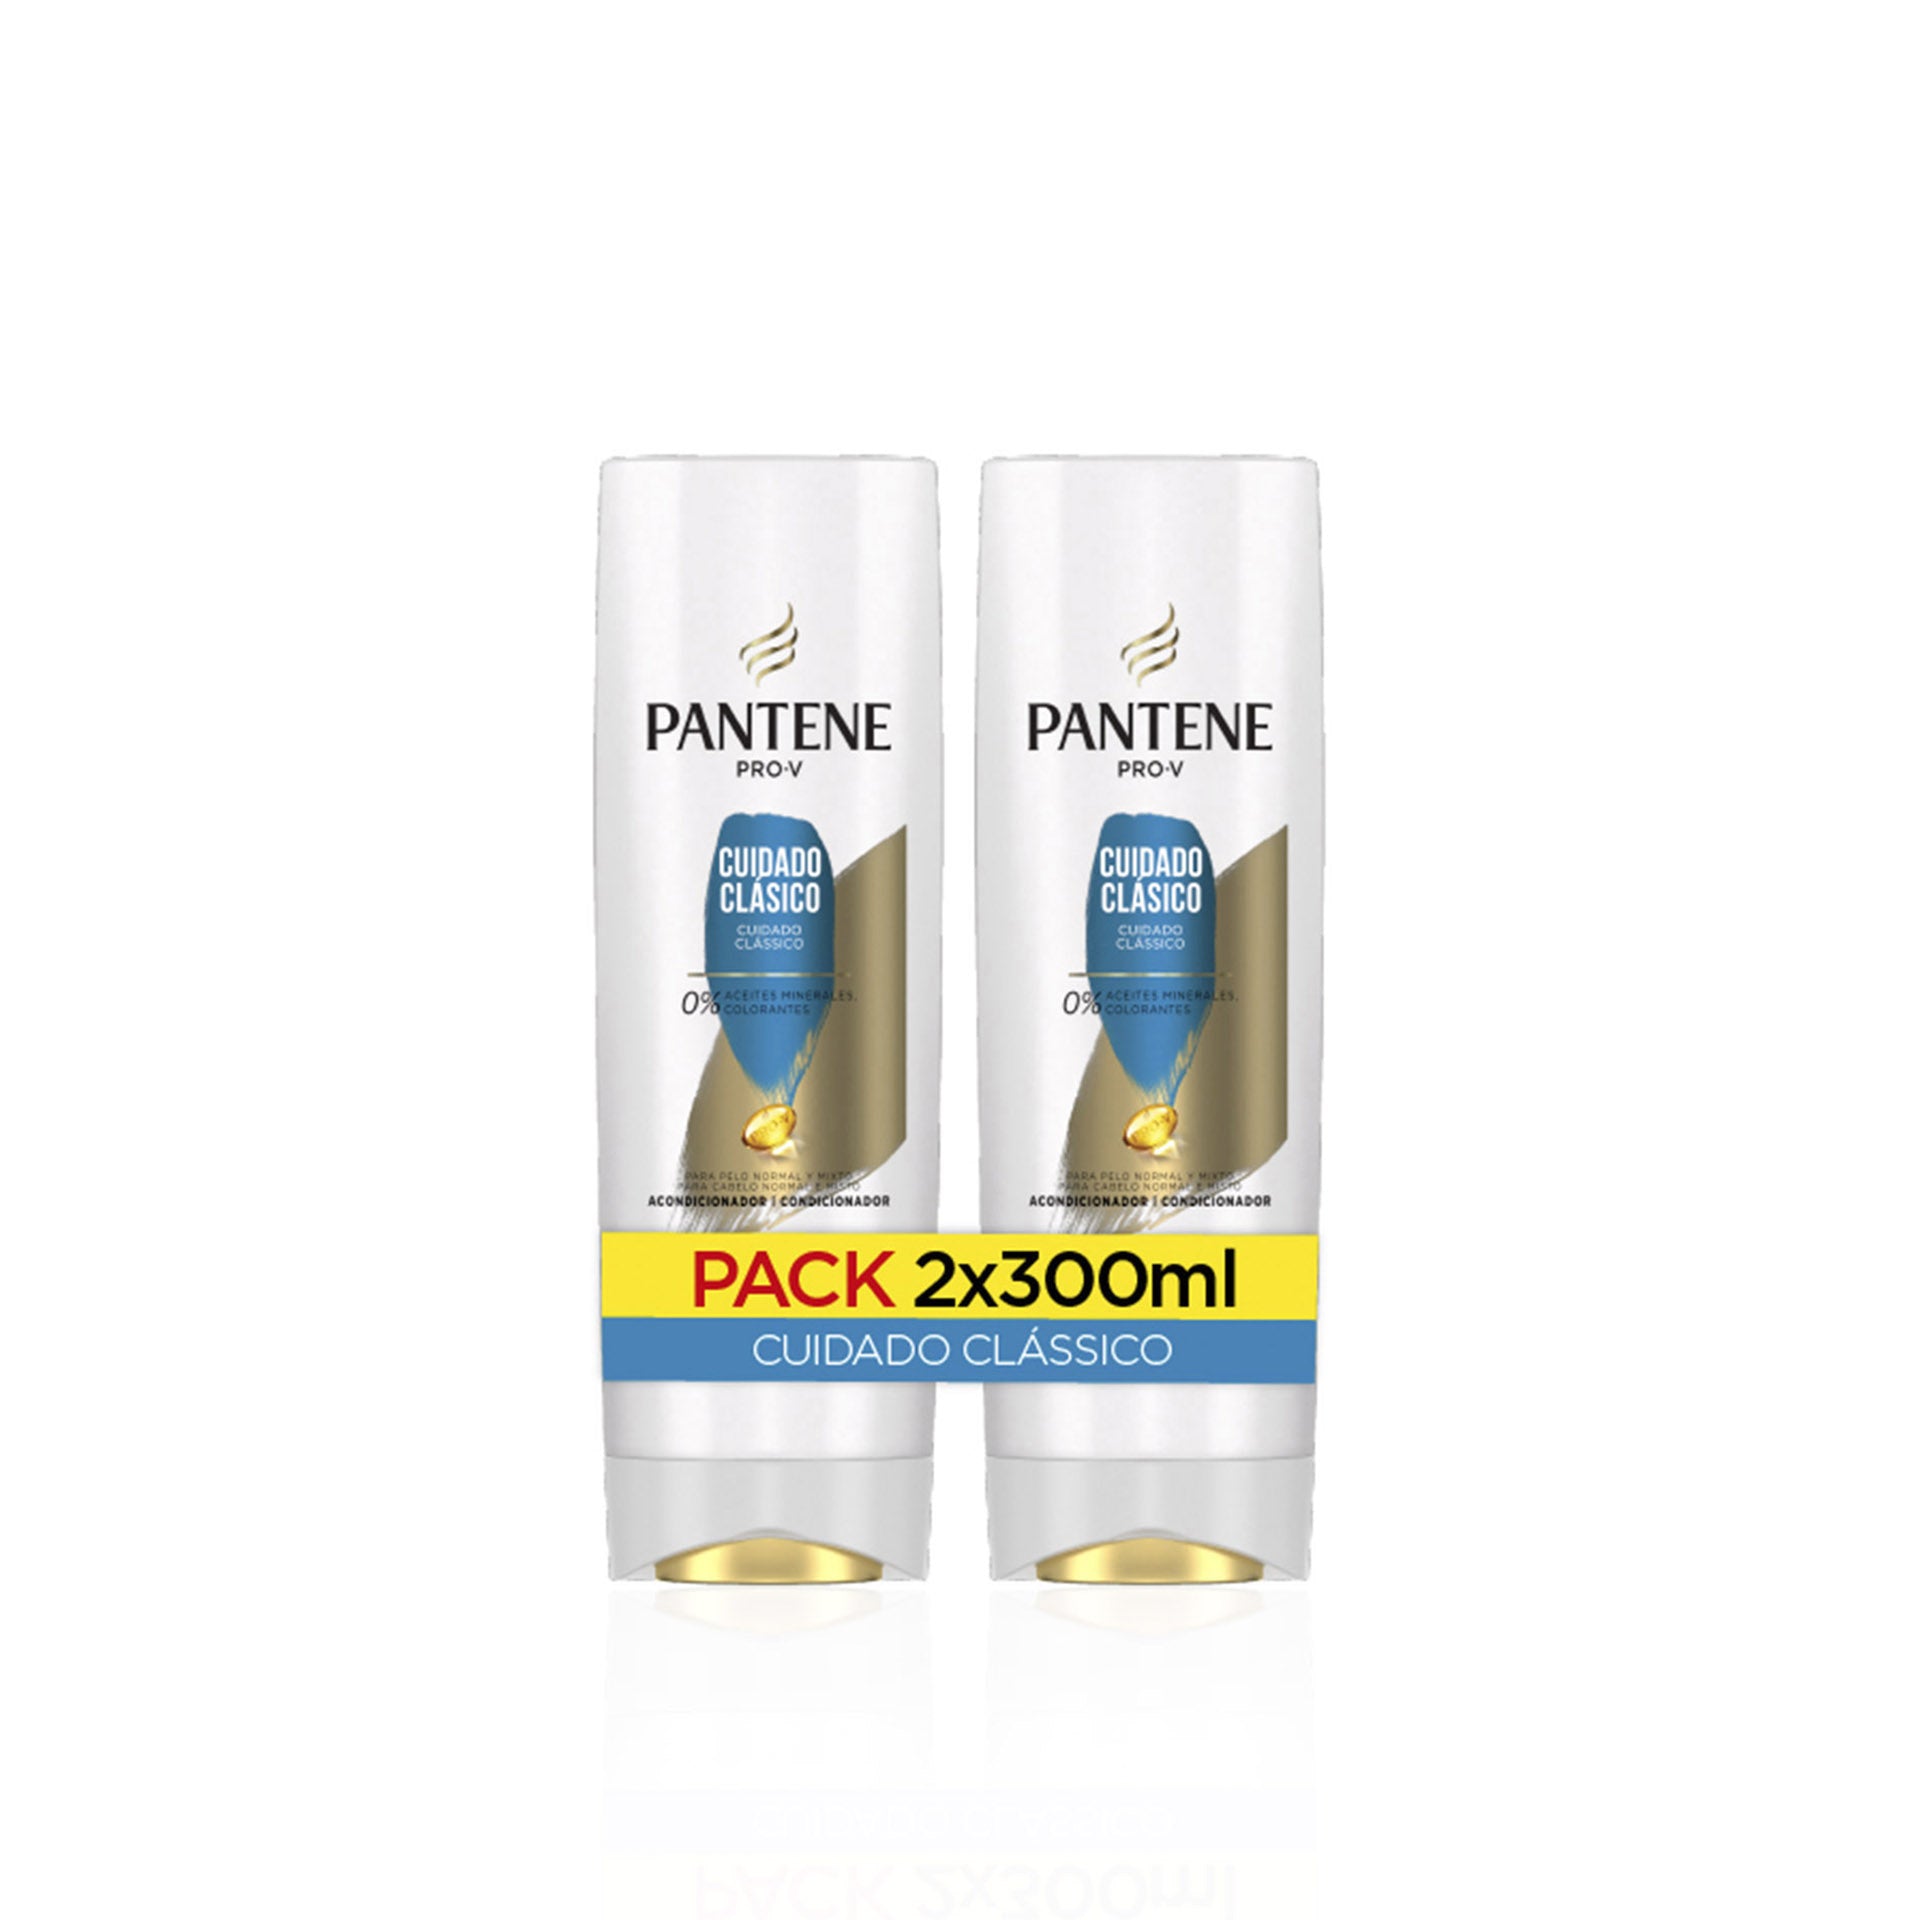 Pantene Condicionador Classic 300 ml - Pack 2 x 300 ml